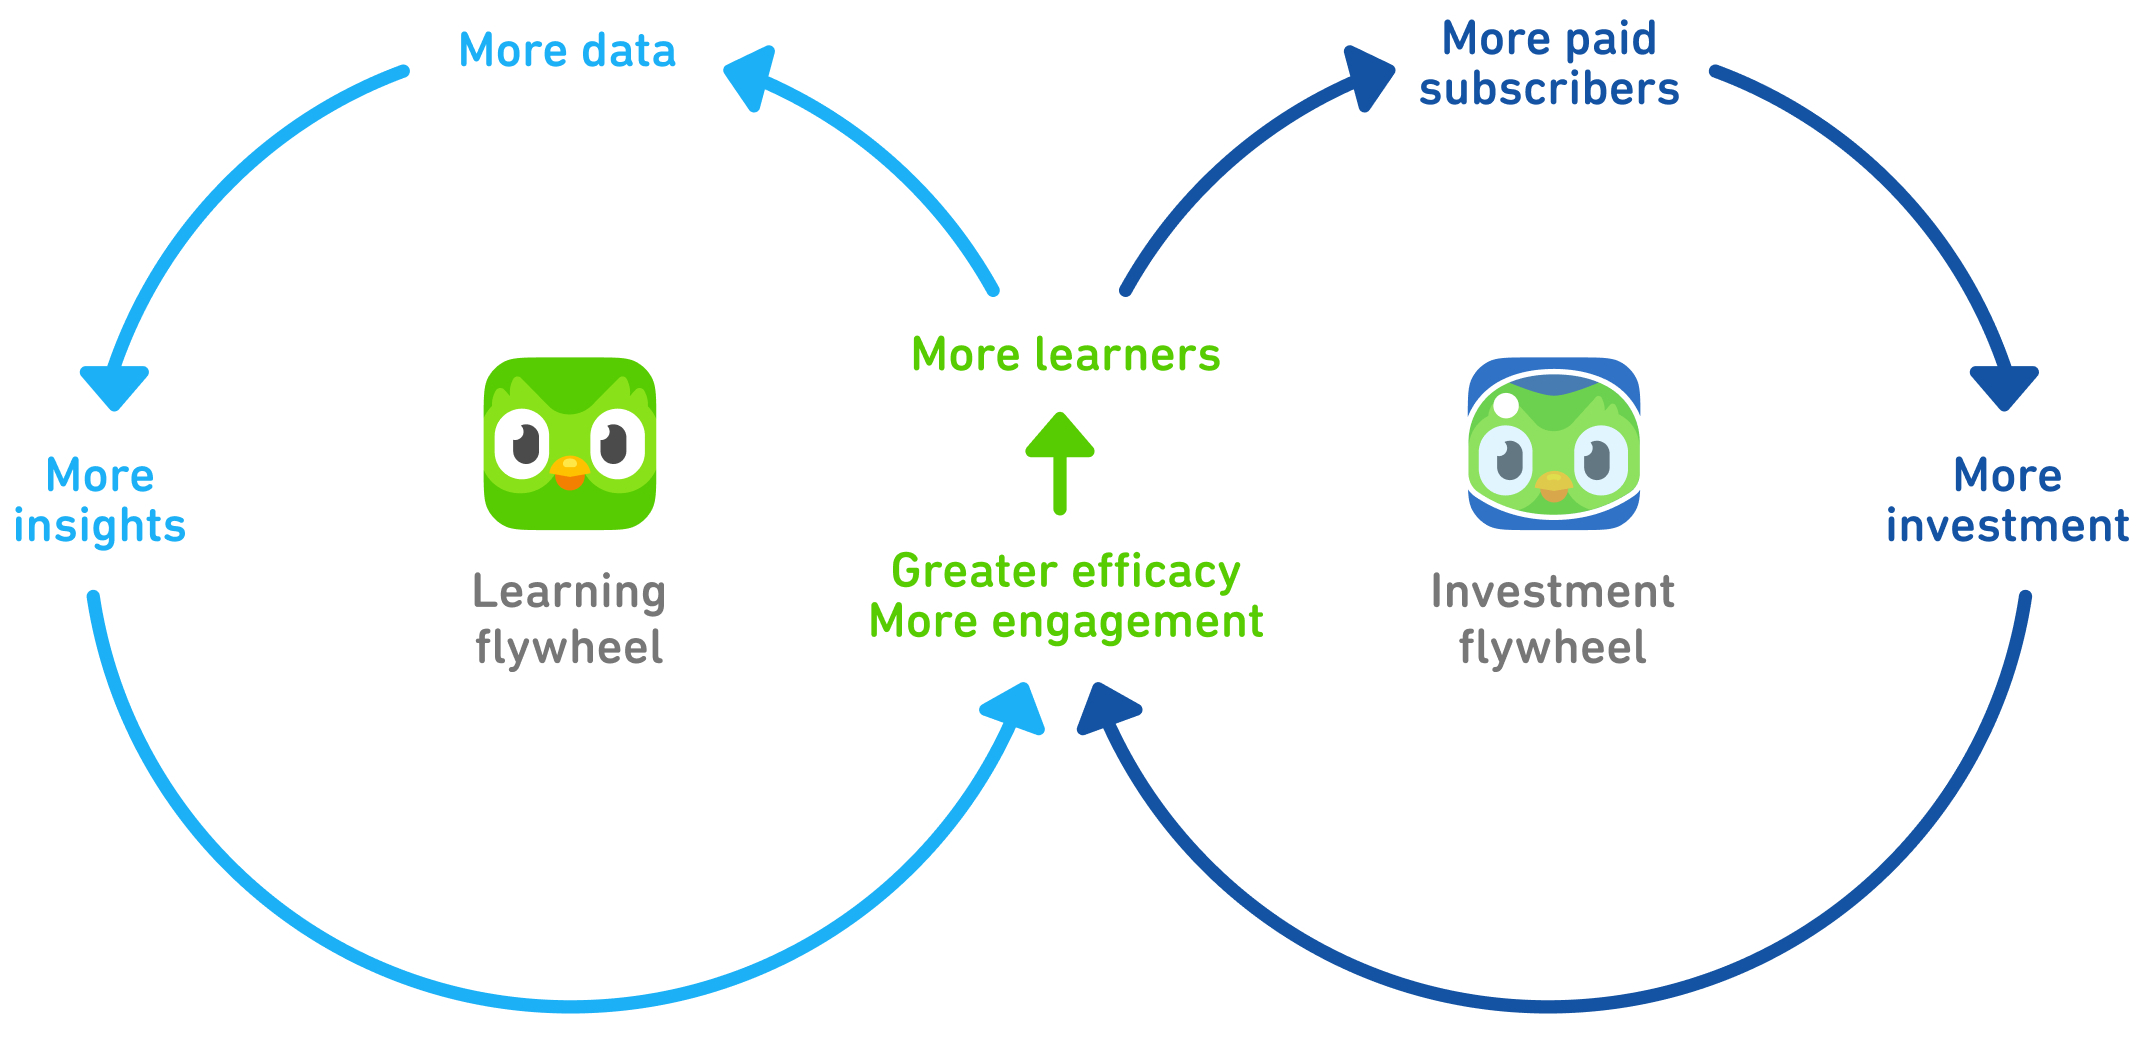 Como o Duolingo ganha dinheiro? Modelo de negócios do Duolingo em poucas  palavras - FourWeekMBA